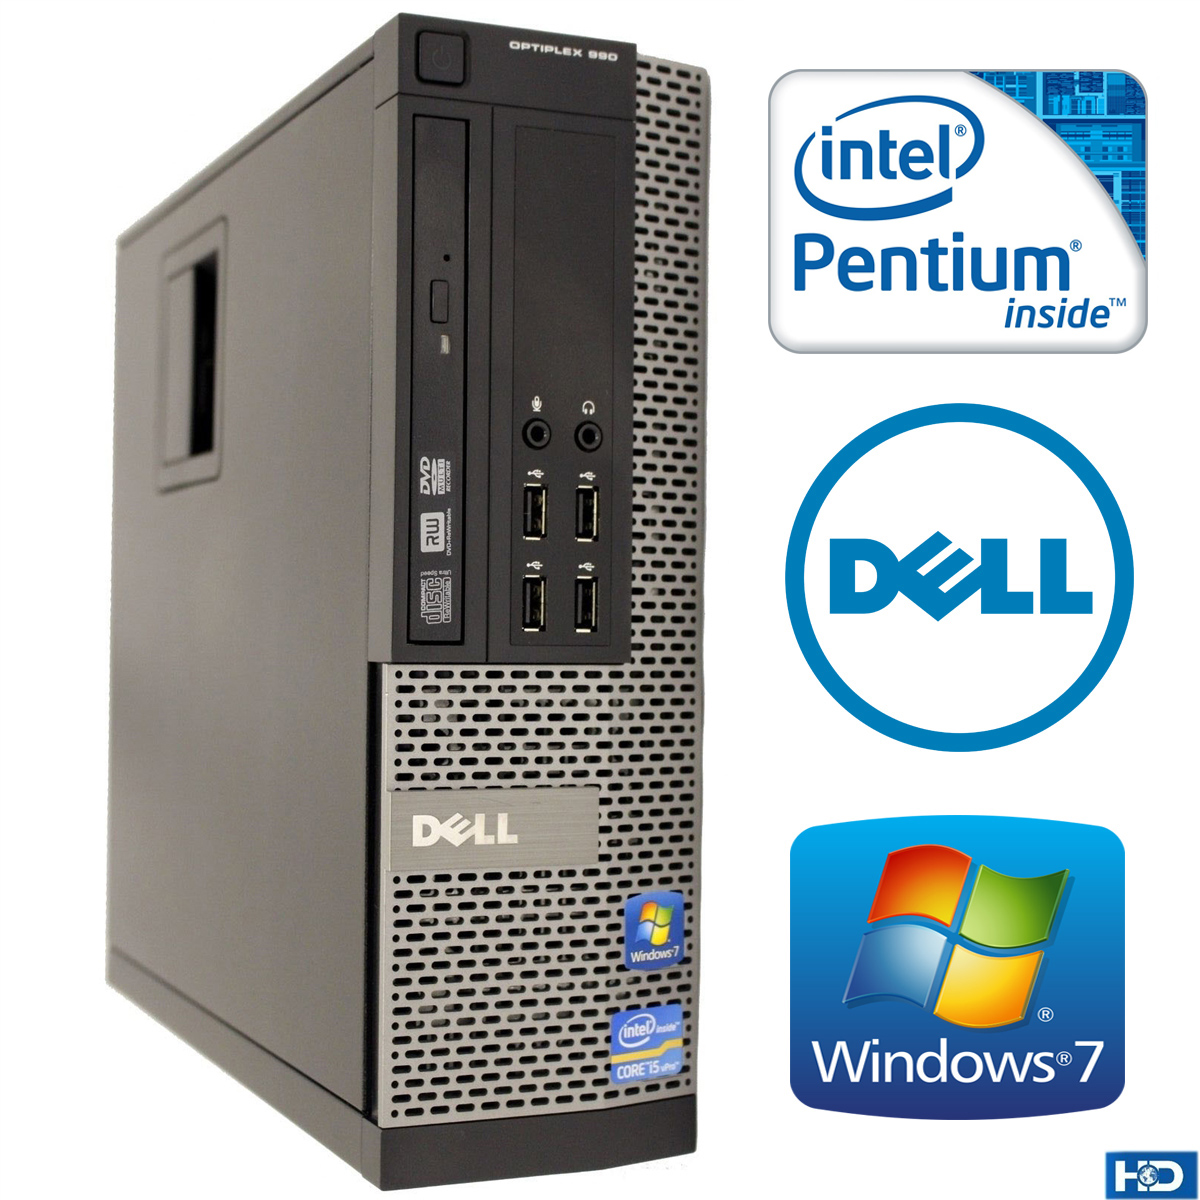 Dell Optiplex 790 Intel Pentium Ram 4GB HDD 250GB